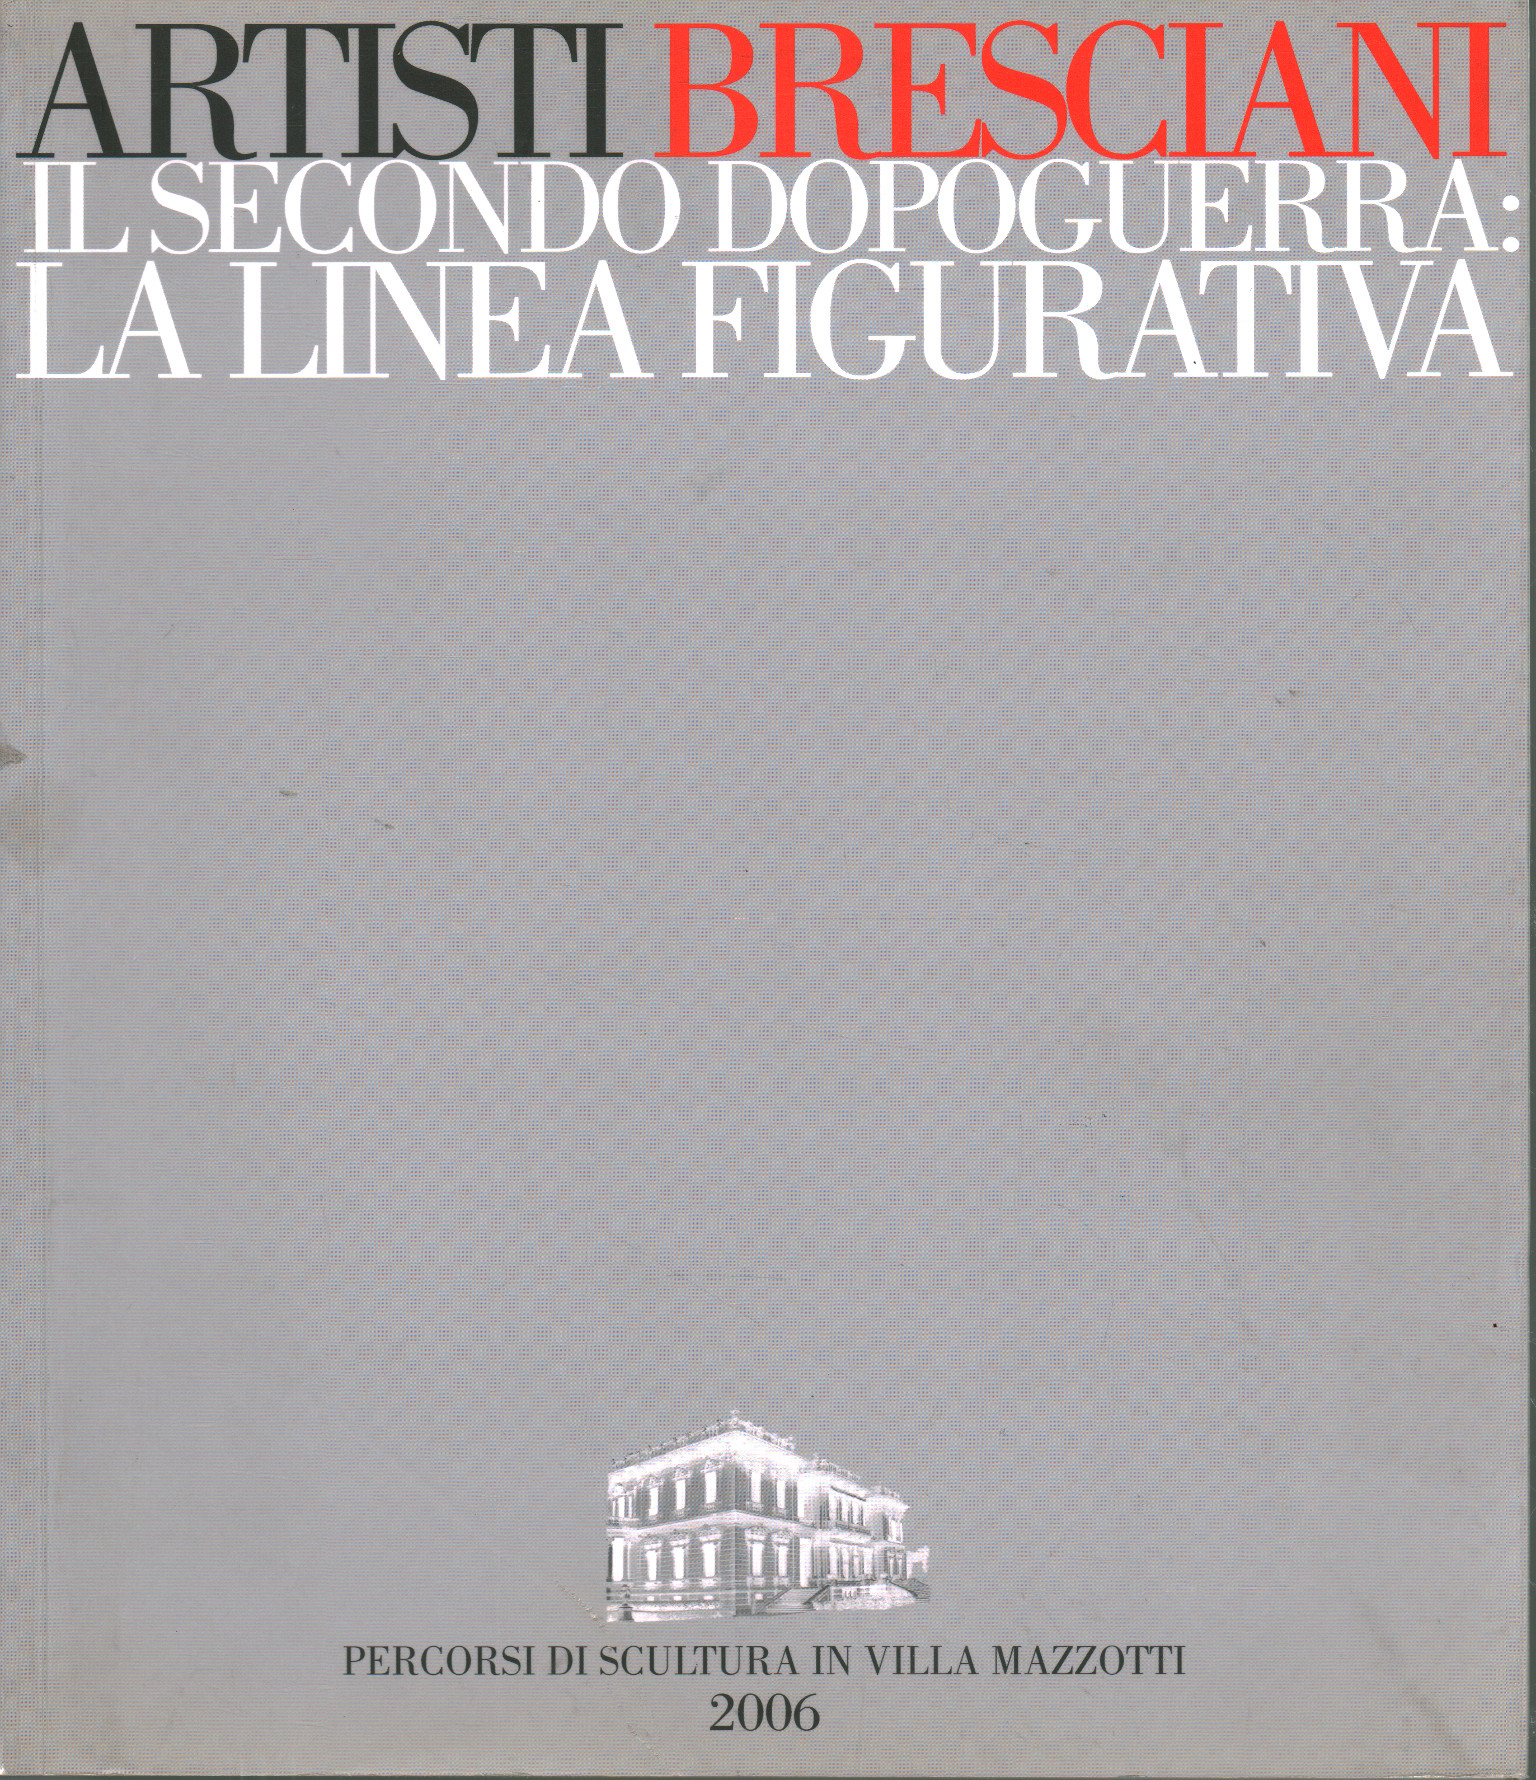 El segundo período de posguerra en Brescia: la línea figurada, Mauro Corradini